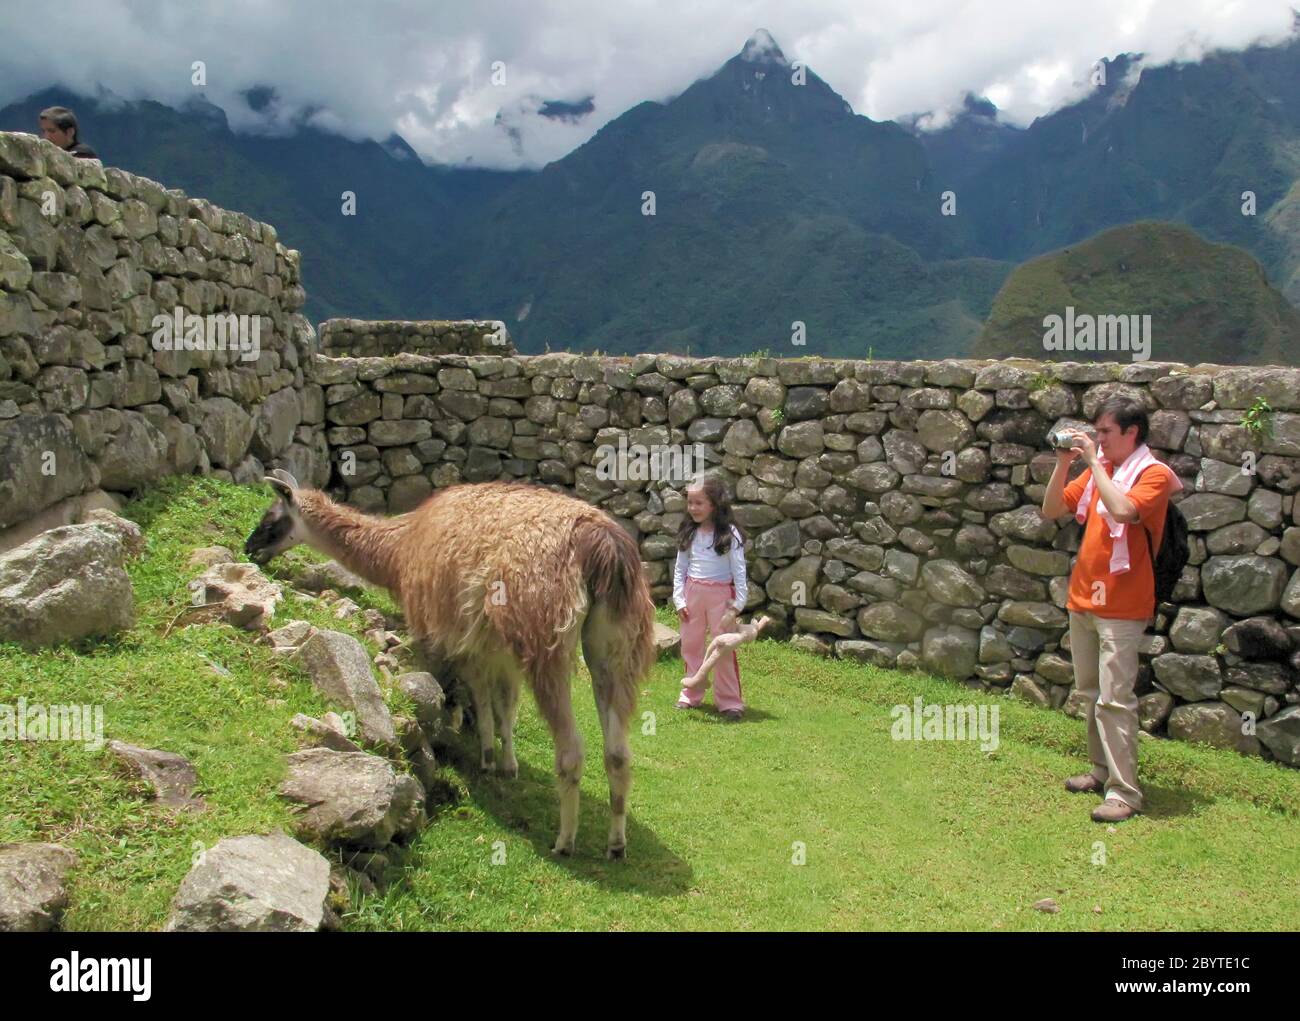 Man and girl looking at llama in Machu Picchu, Peru Stock Photo